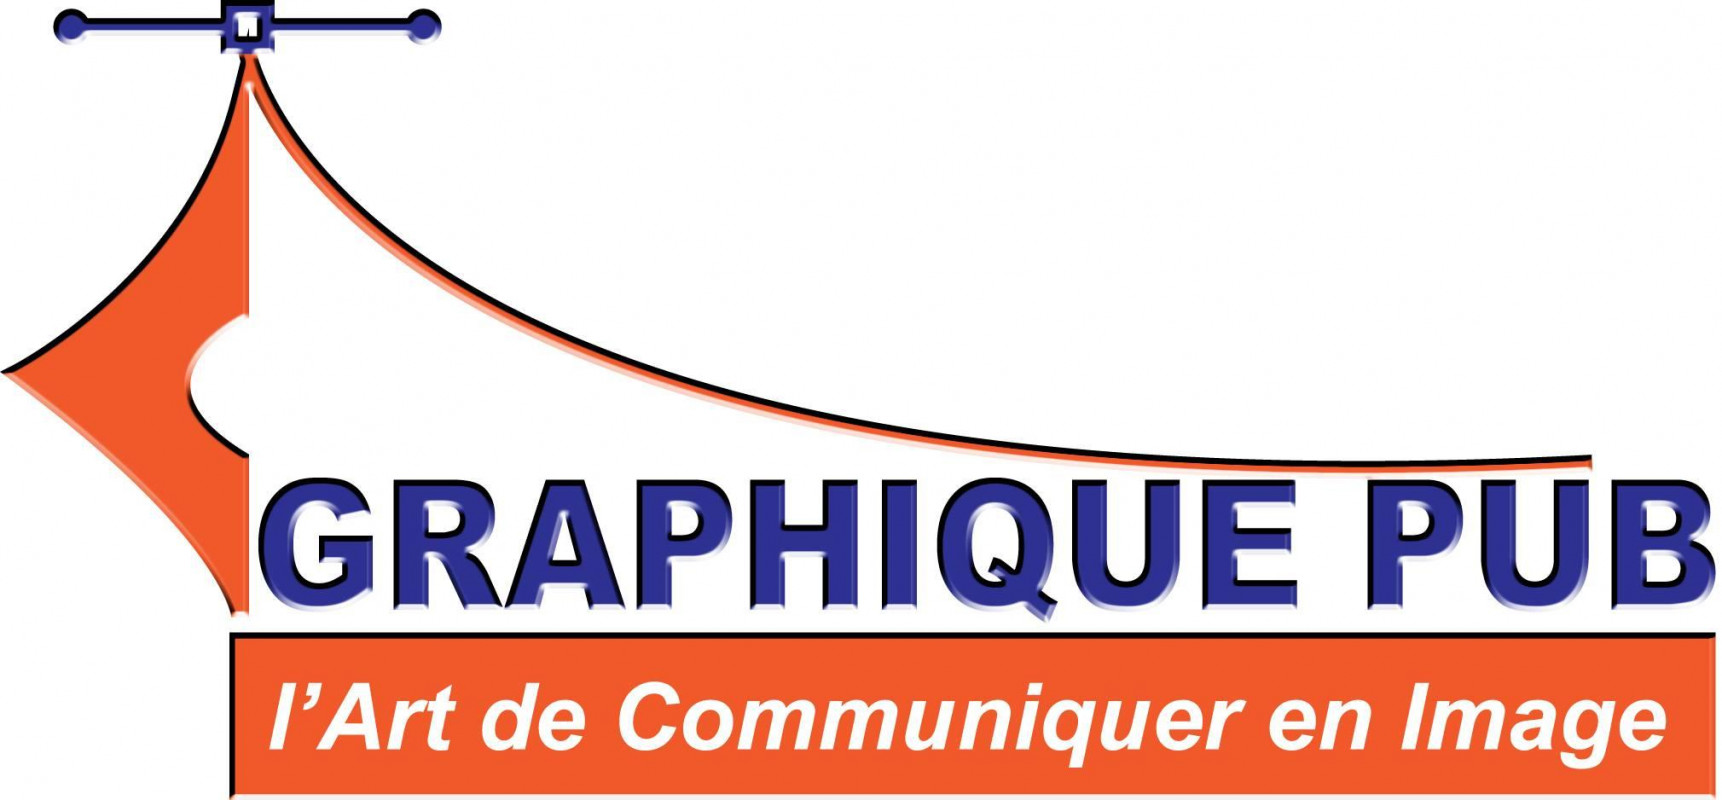 GRAPHIQUE PUB Company Logo